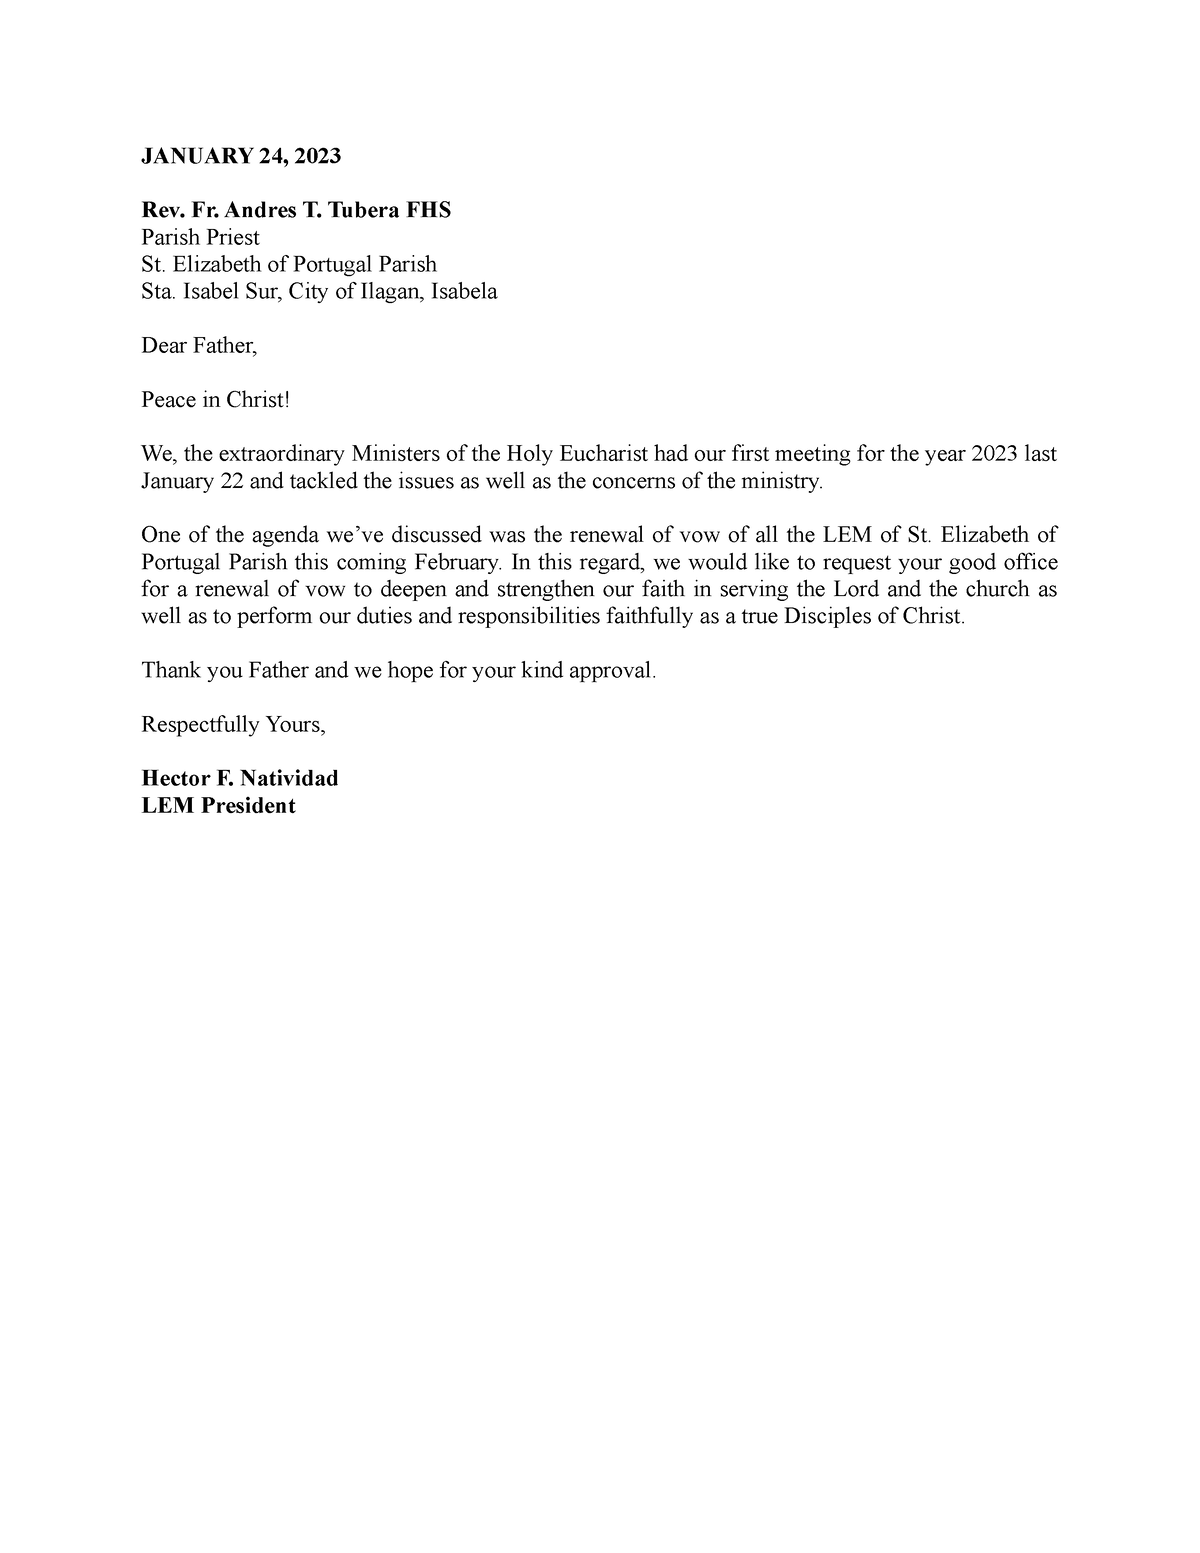 Request Letter - XSSSS - JANUARY 24, 2023 Rev. Fr. Andres T. Tubera FHS ...